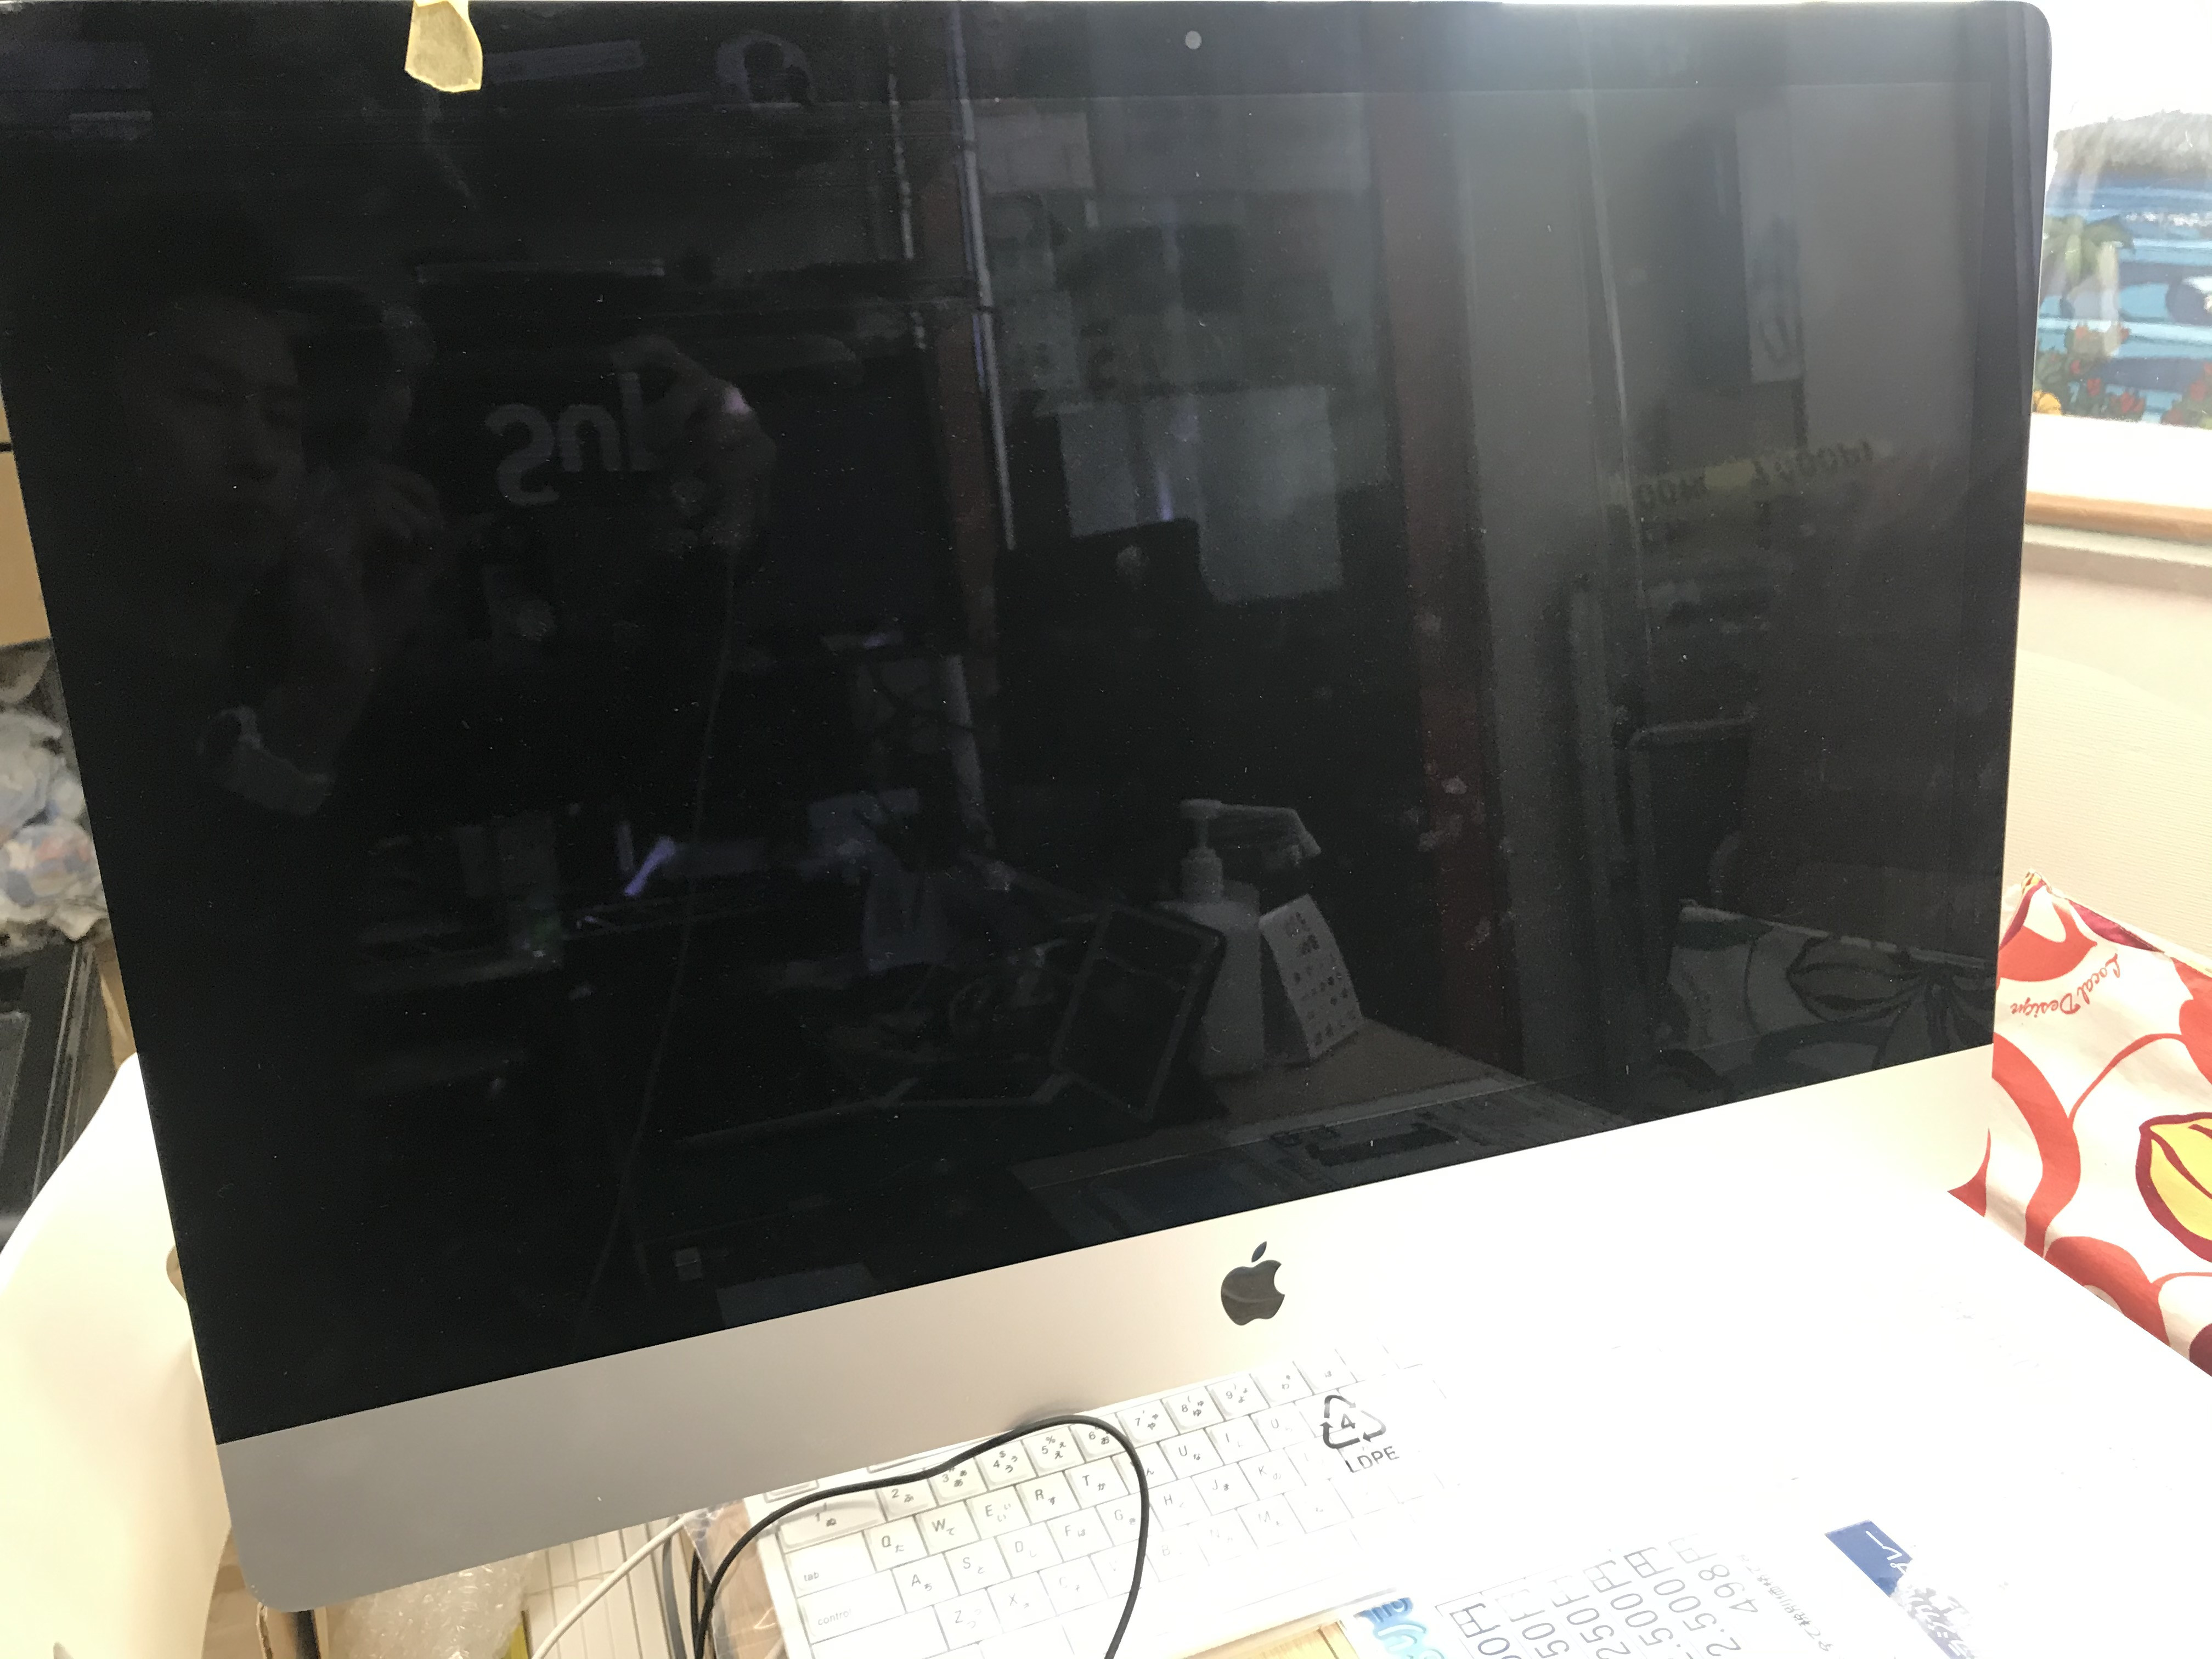 11月28日 iMac　A1419　リカバリー修理中です。